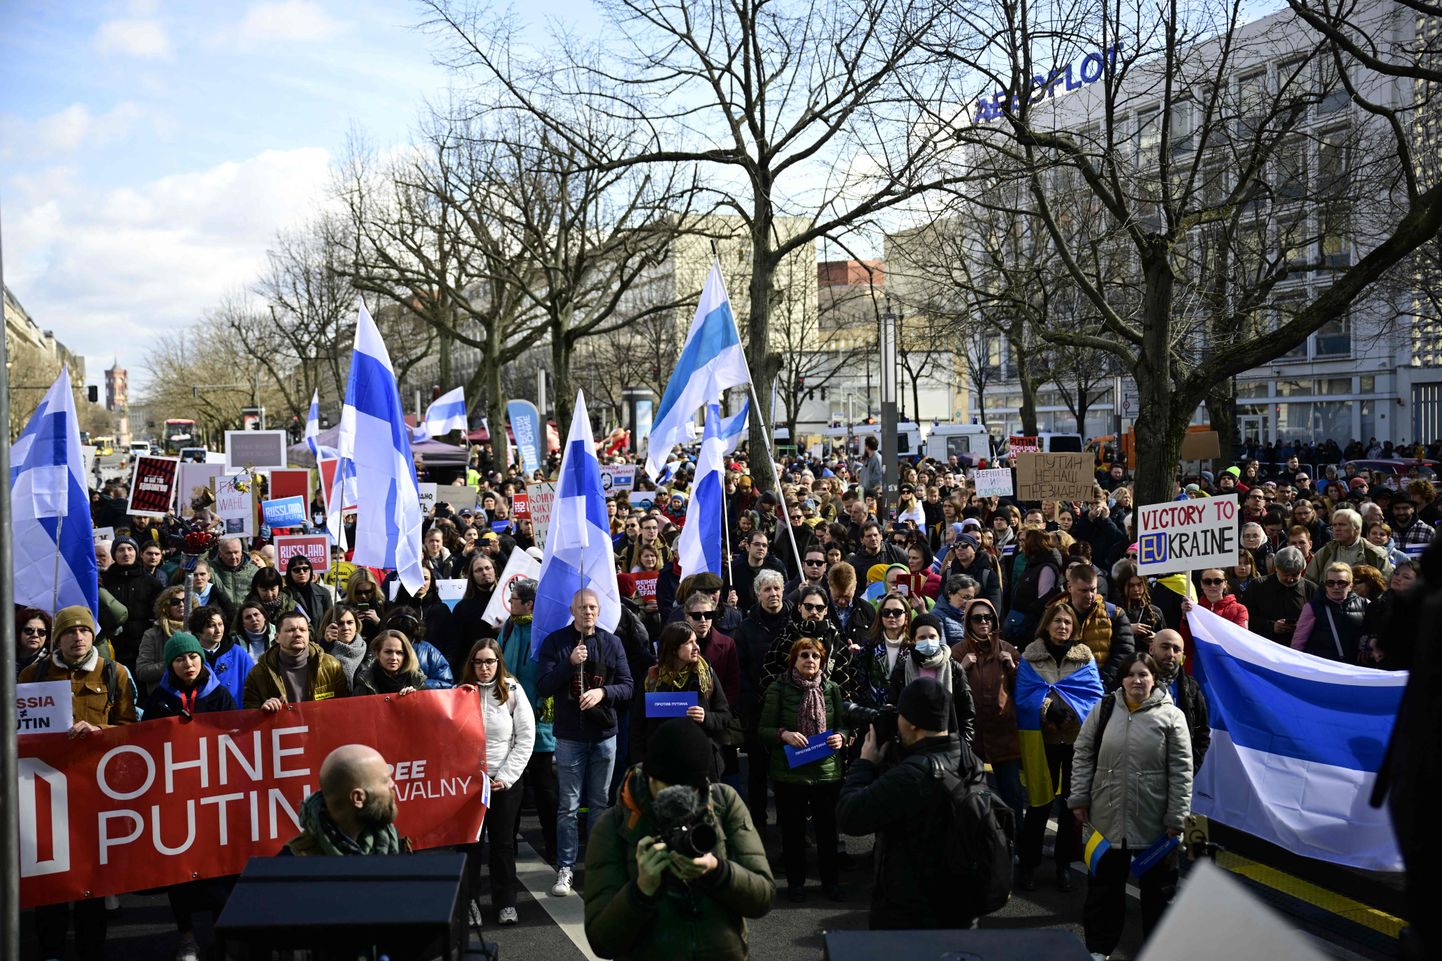 Venemaa presidendivalimiste vastane protest 17. märtsil 2024 Saksamaal Berliinis. Näha oli ka valge-sini-valge lippe, mis algselt oli Venemaa agressioonisõja Ukrainas vastuseisu sümbol, kuid nüüd tähistavad protestimist ka Vene poliitikute ja võimu vastu